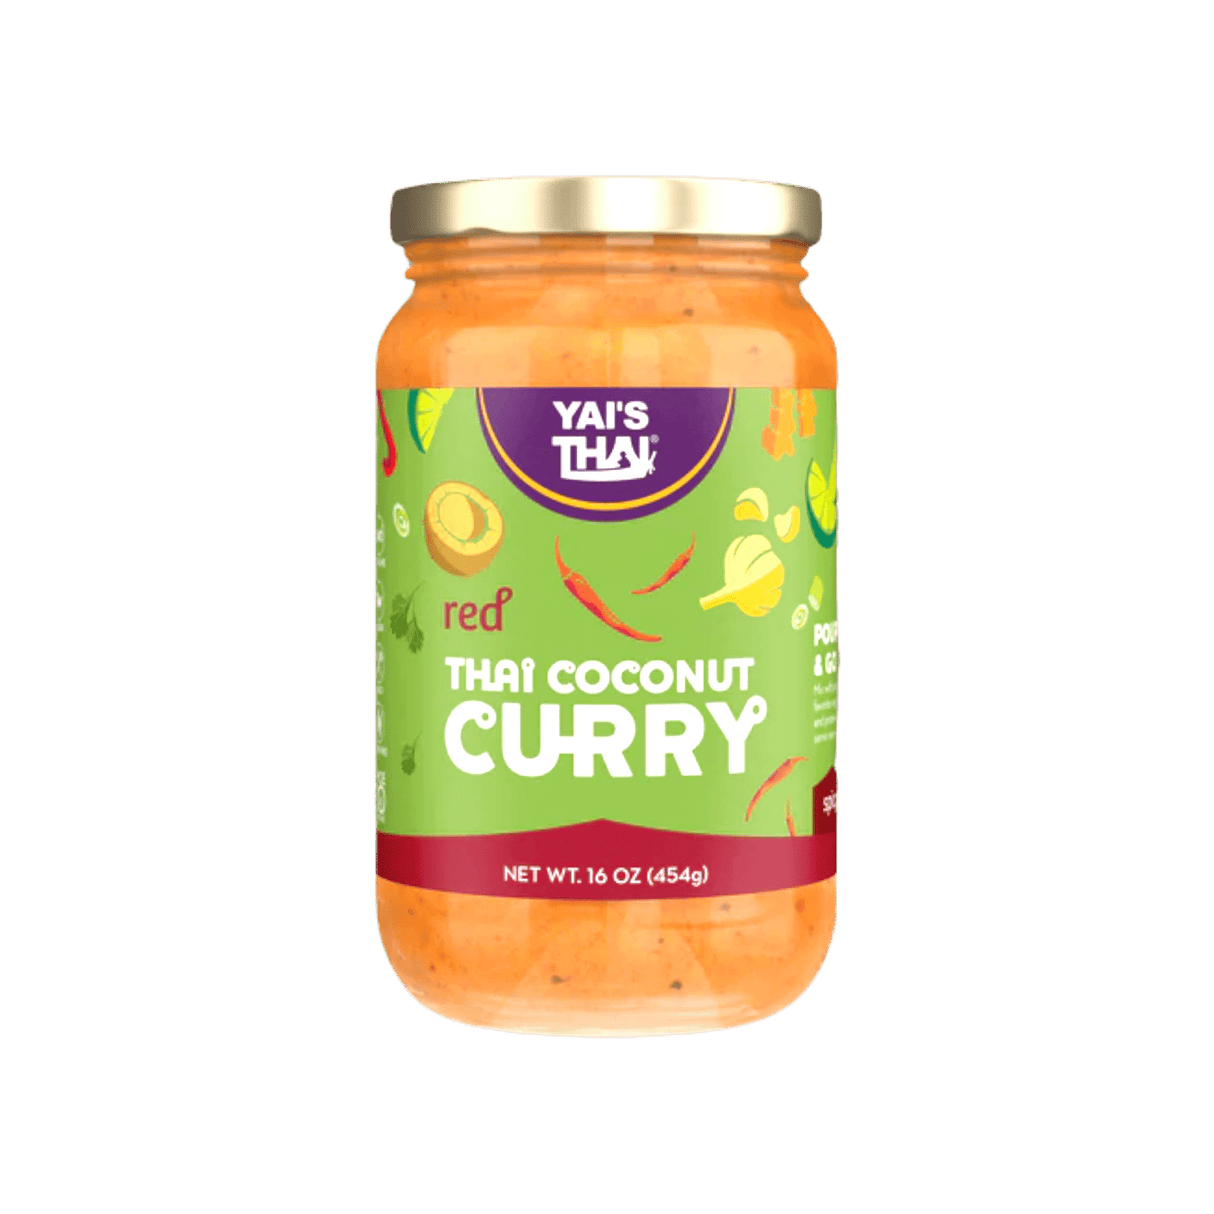 Yai's Thai Thai Coconut Curry - Red